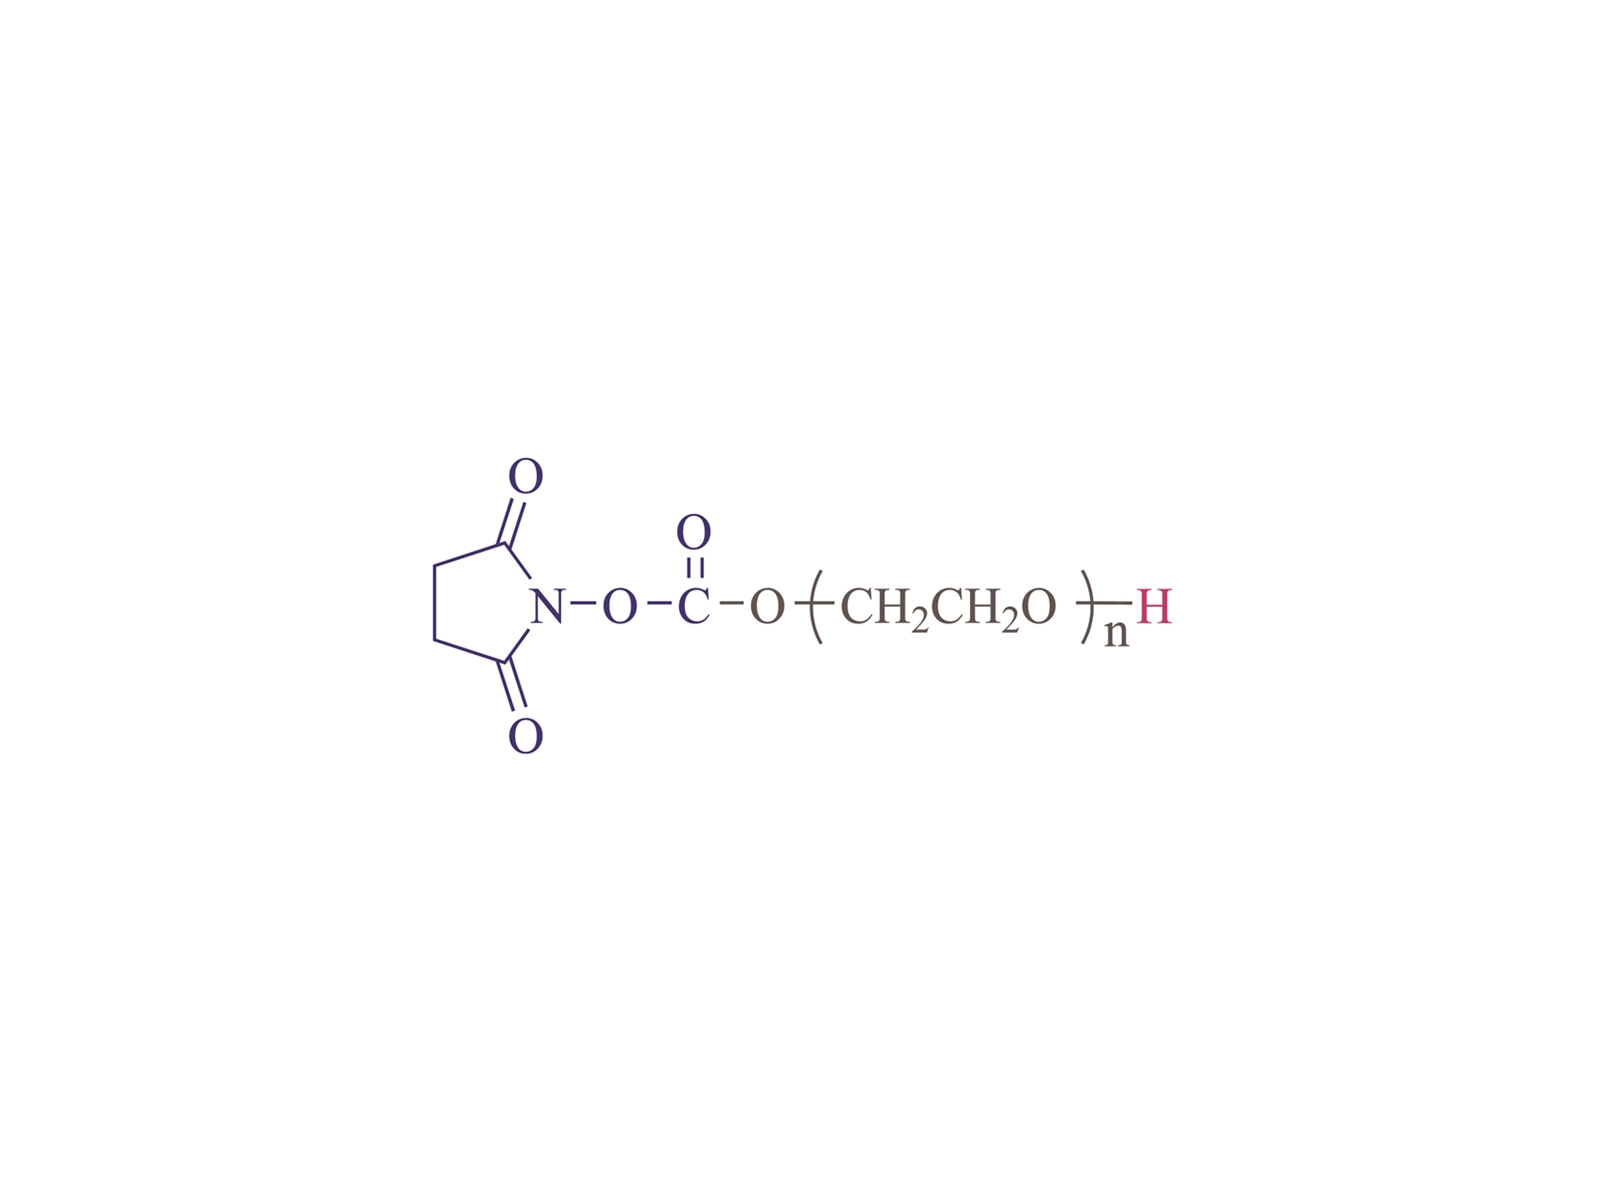 α-süksinimidil-ω-hidroksil poli (etilen glikol) [SC-PEG-OH]